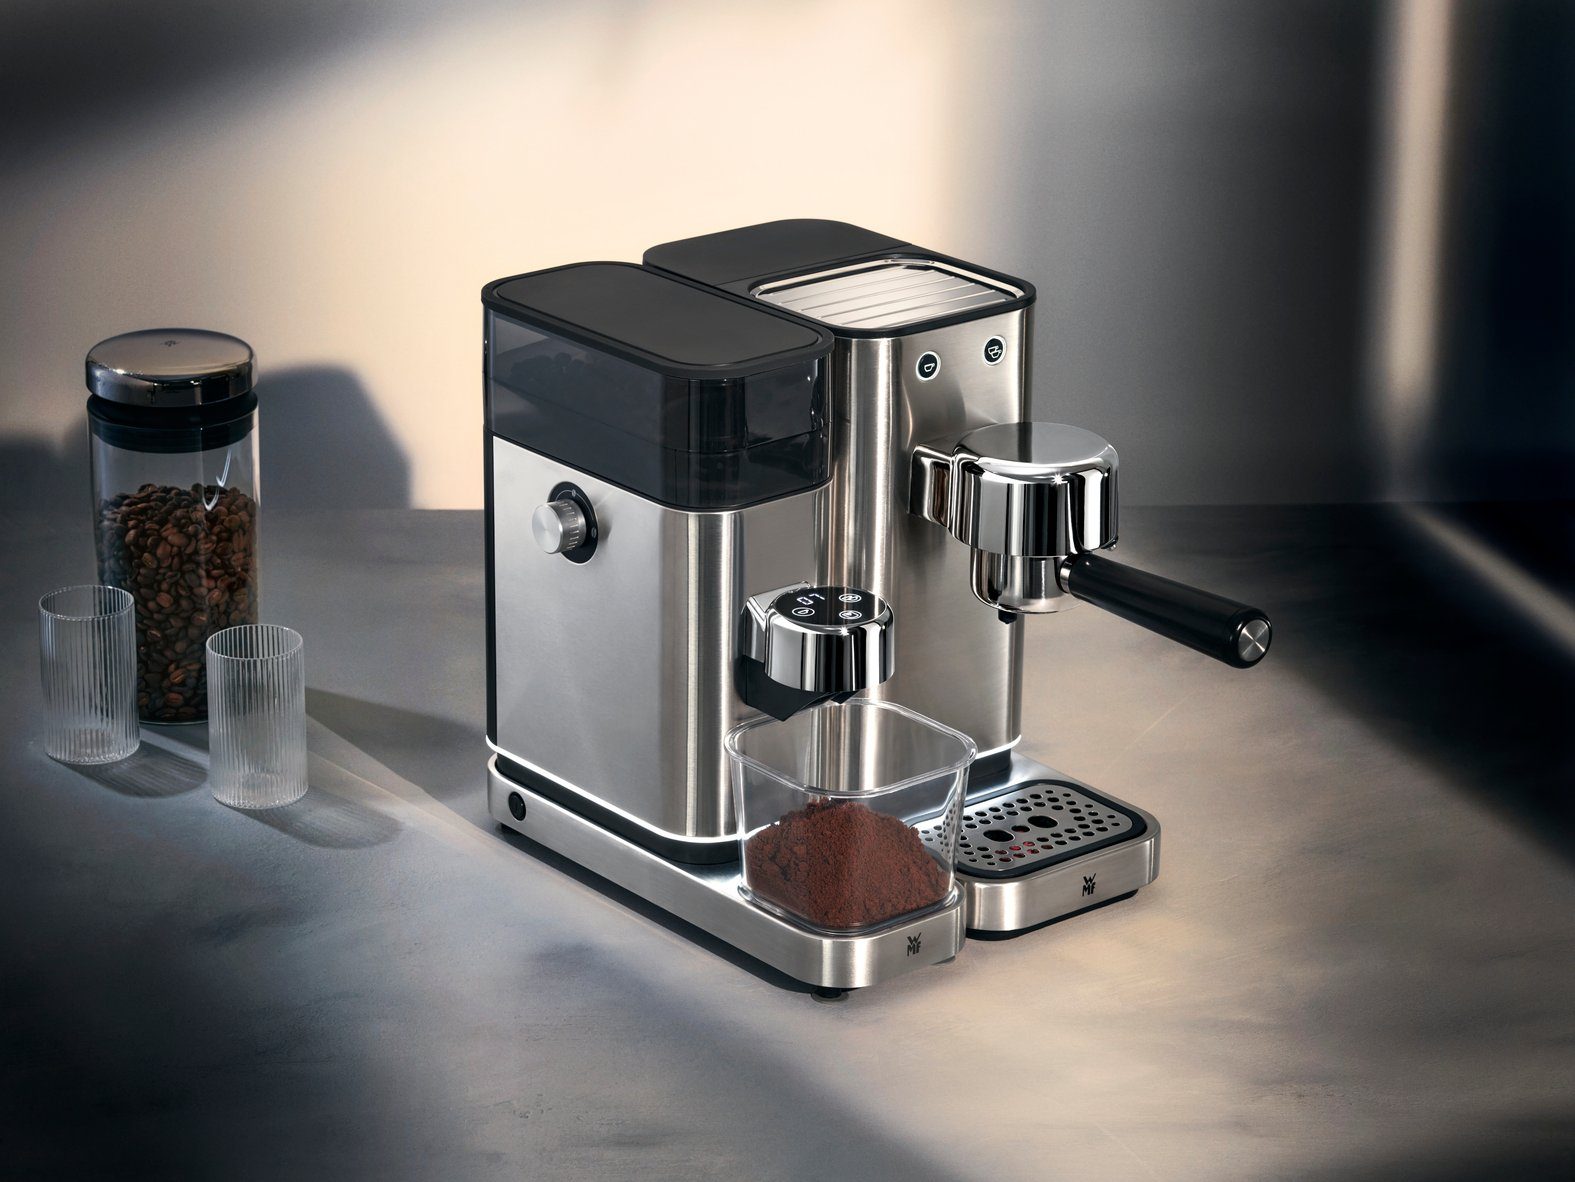 Espressomühle elektrisch Lumero WMF Kaffeemühle